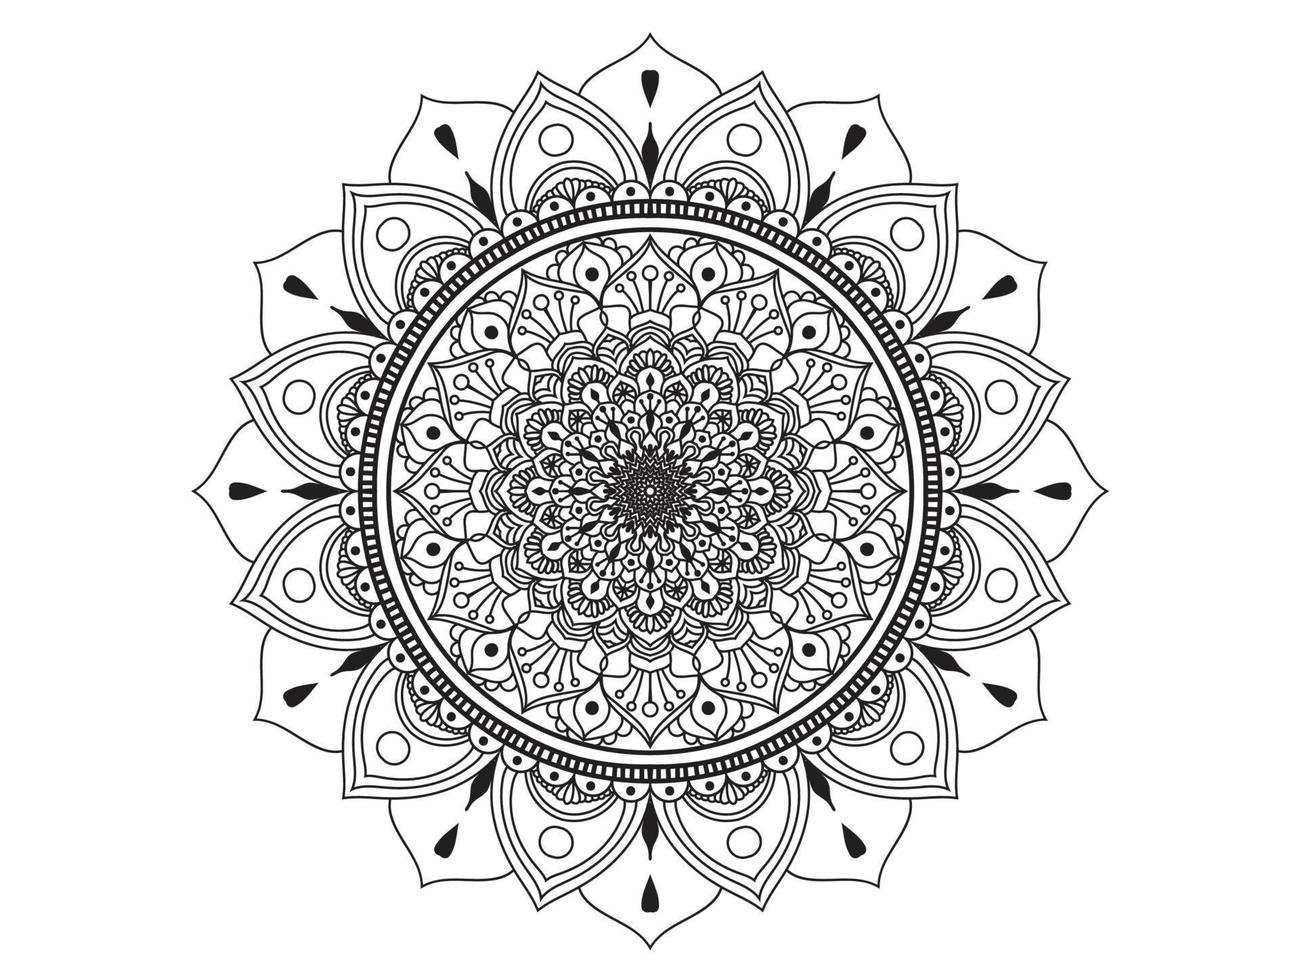 patrón de círculo en forma de mandala para henna, mehndi, tatuajes, adornos decorativos en estilo étnico oriental, páginas de libros para colorear. vector